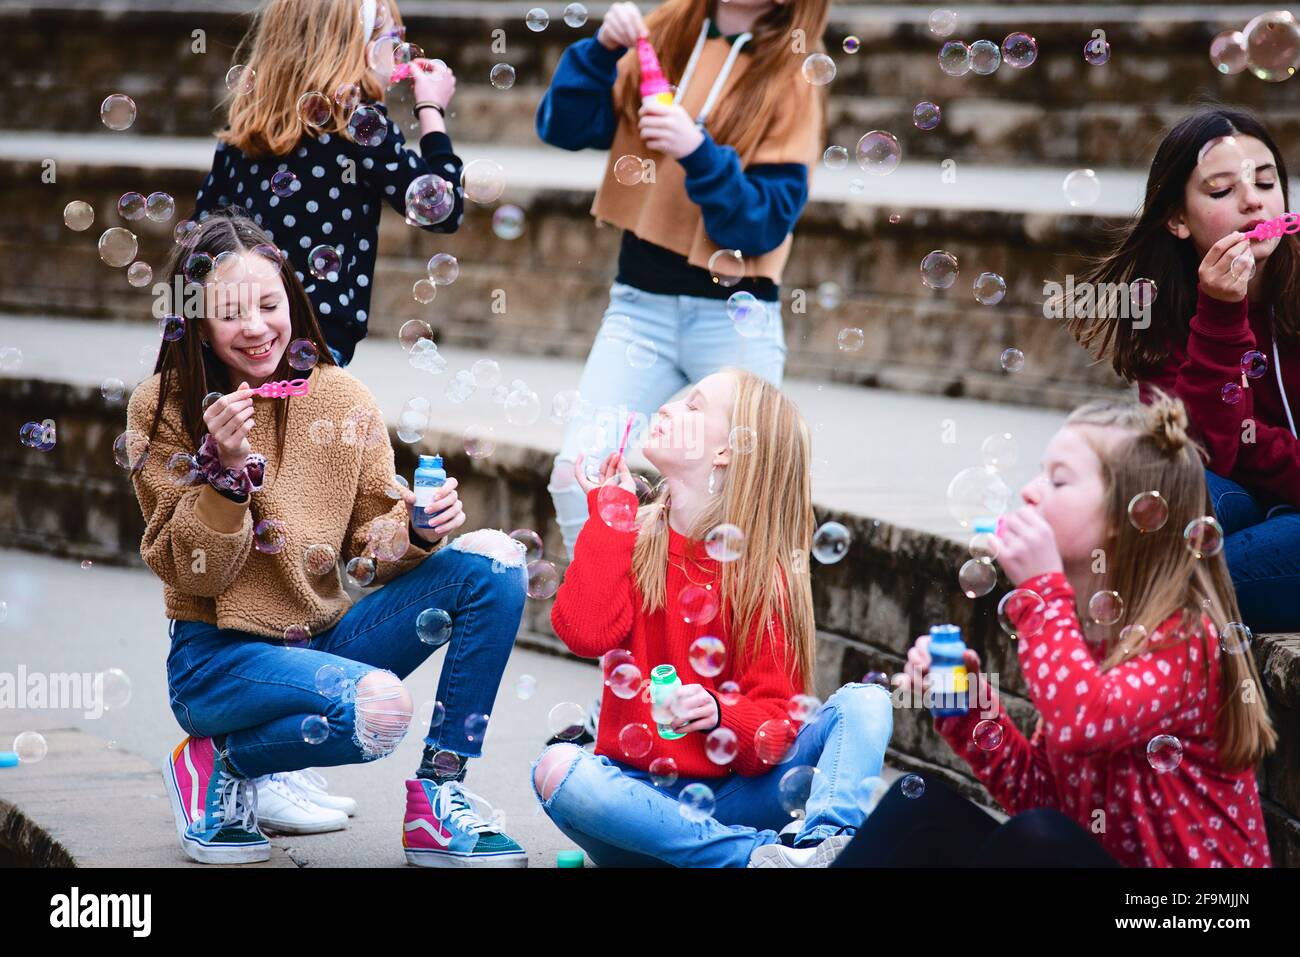 Gruppo di 6 ragazze cute di Tween che appendono fuori divertendosi nella città. Foto Stock